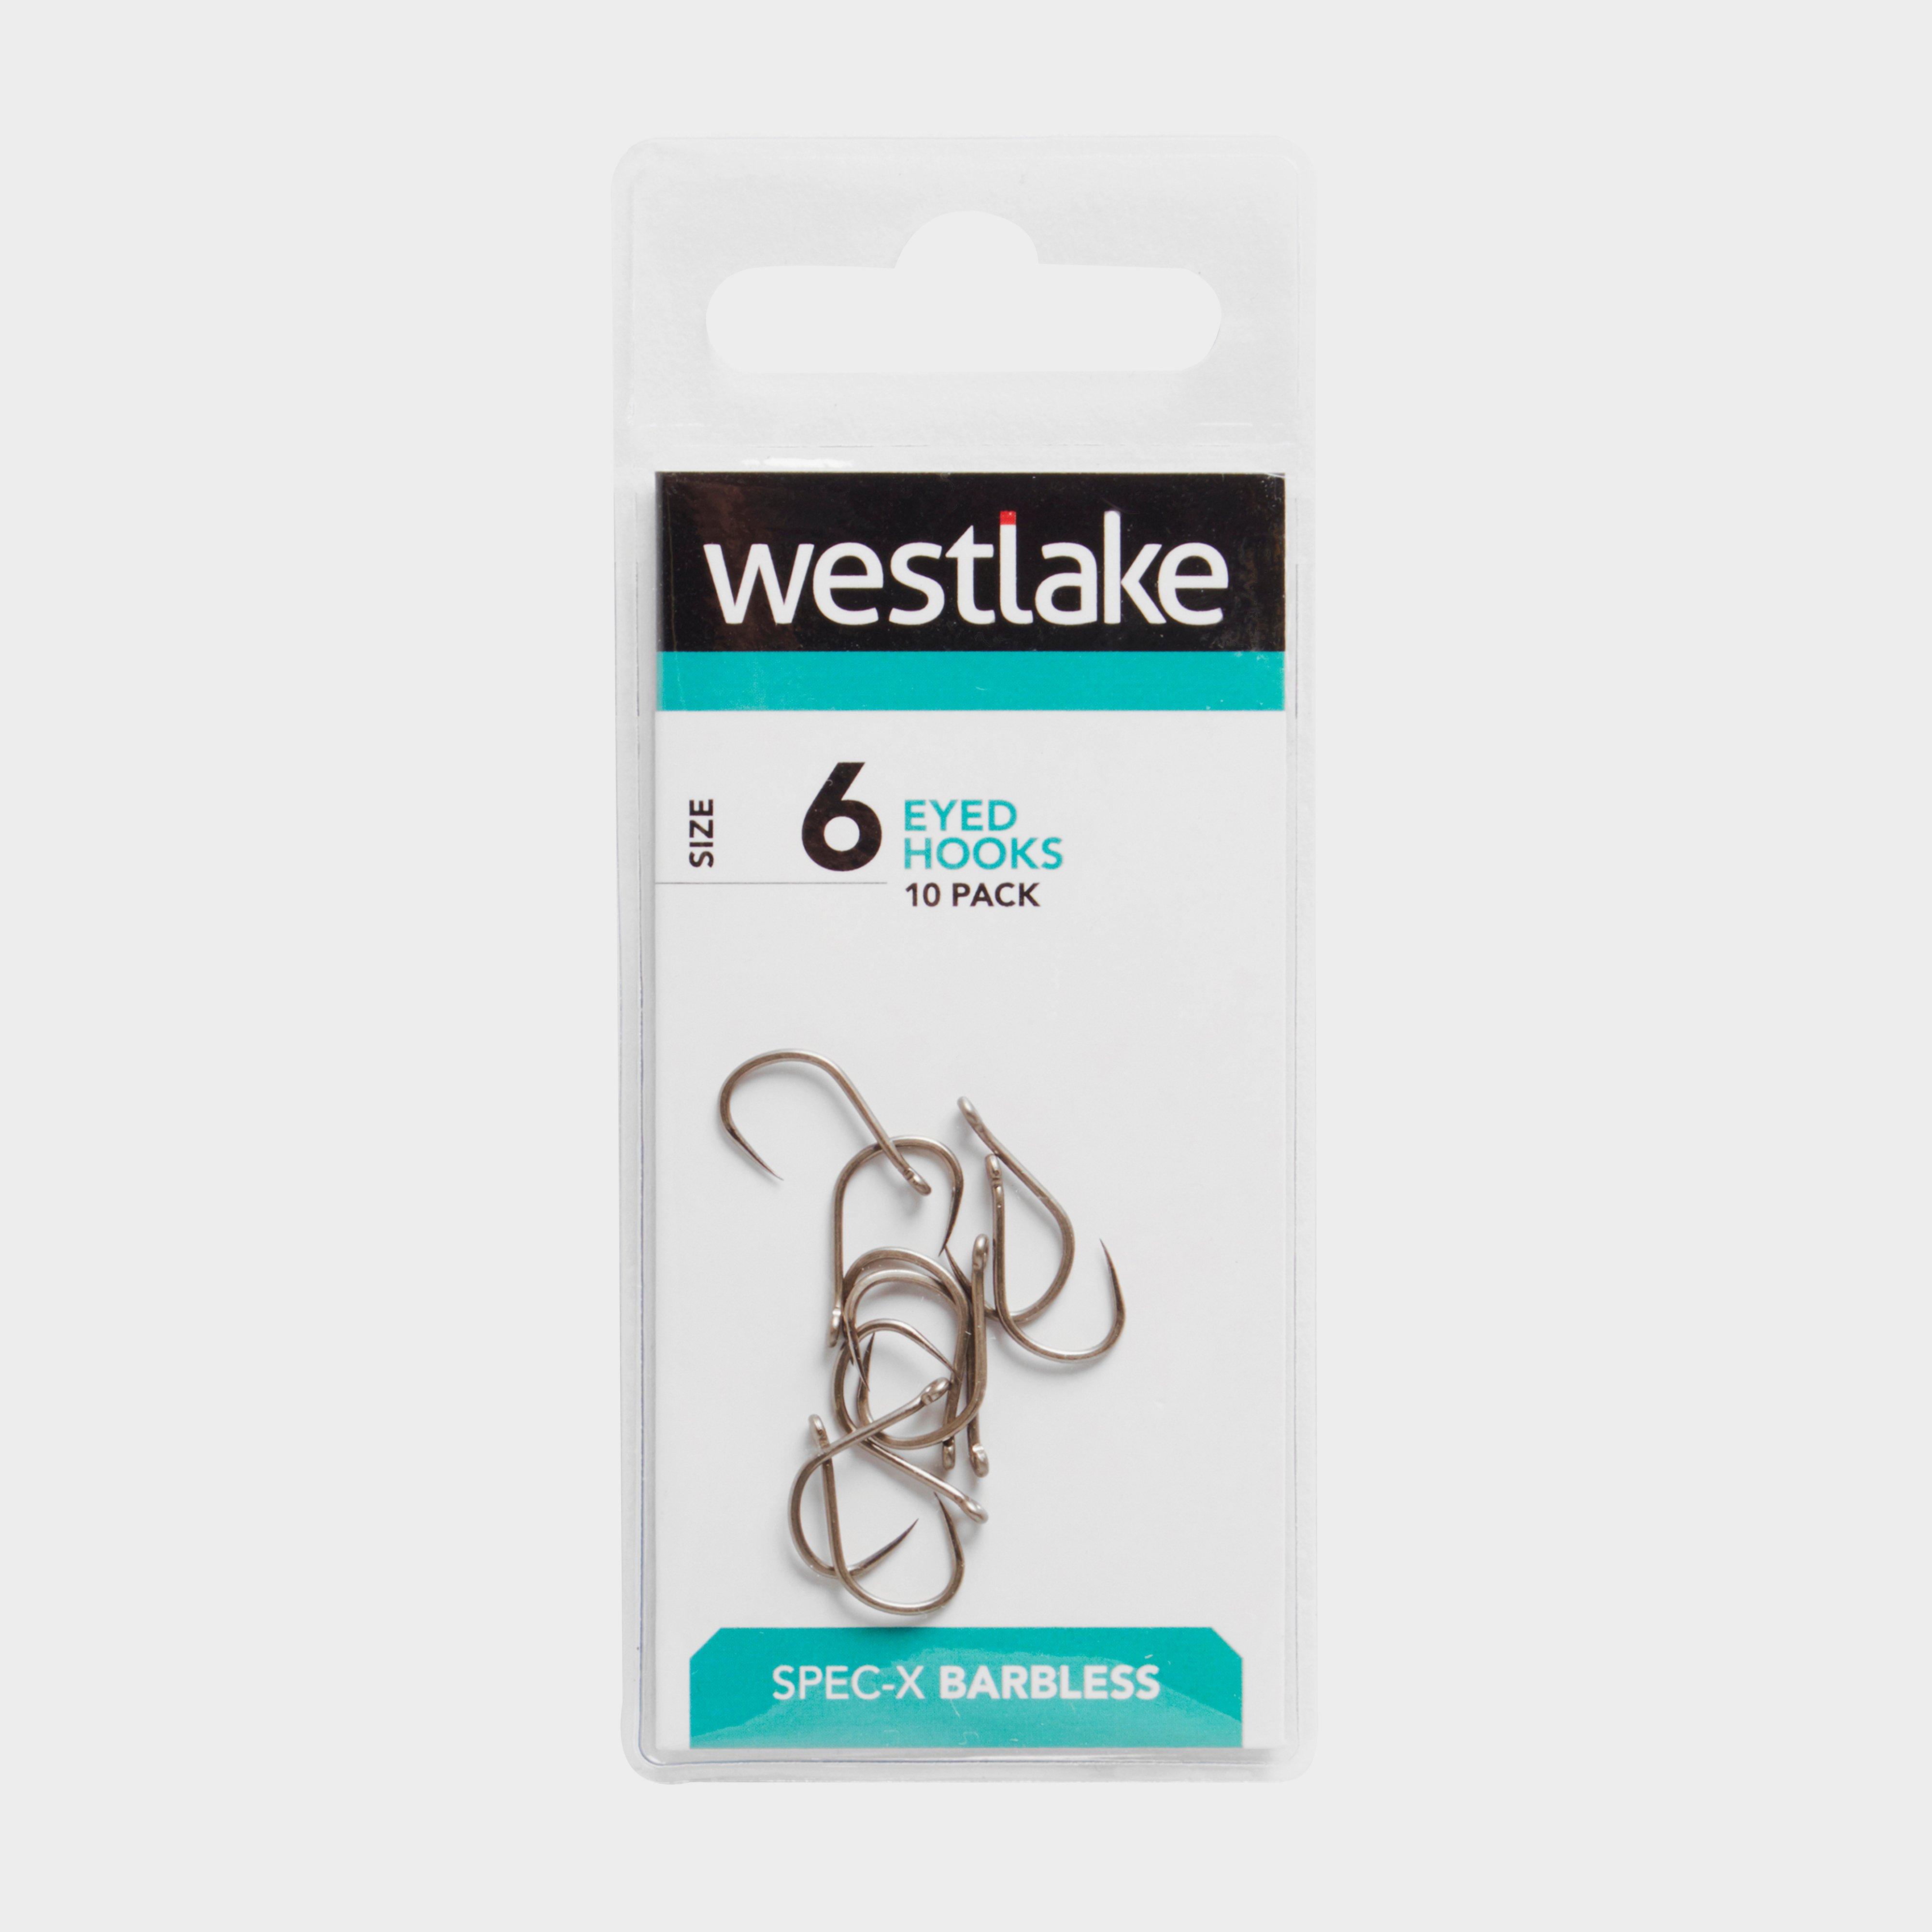 Westlake Barbless Eyed Hooks (size 6)